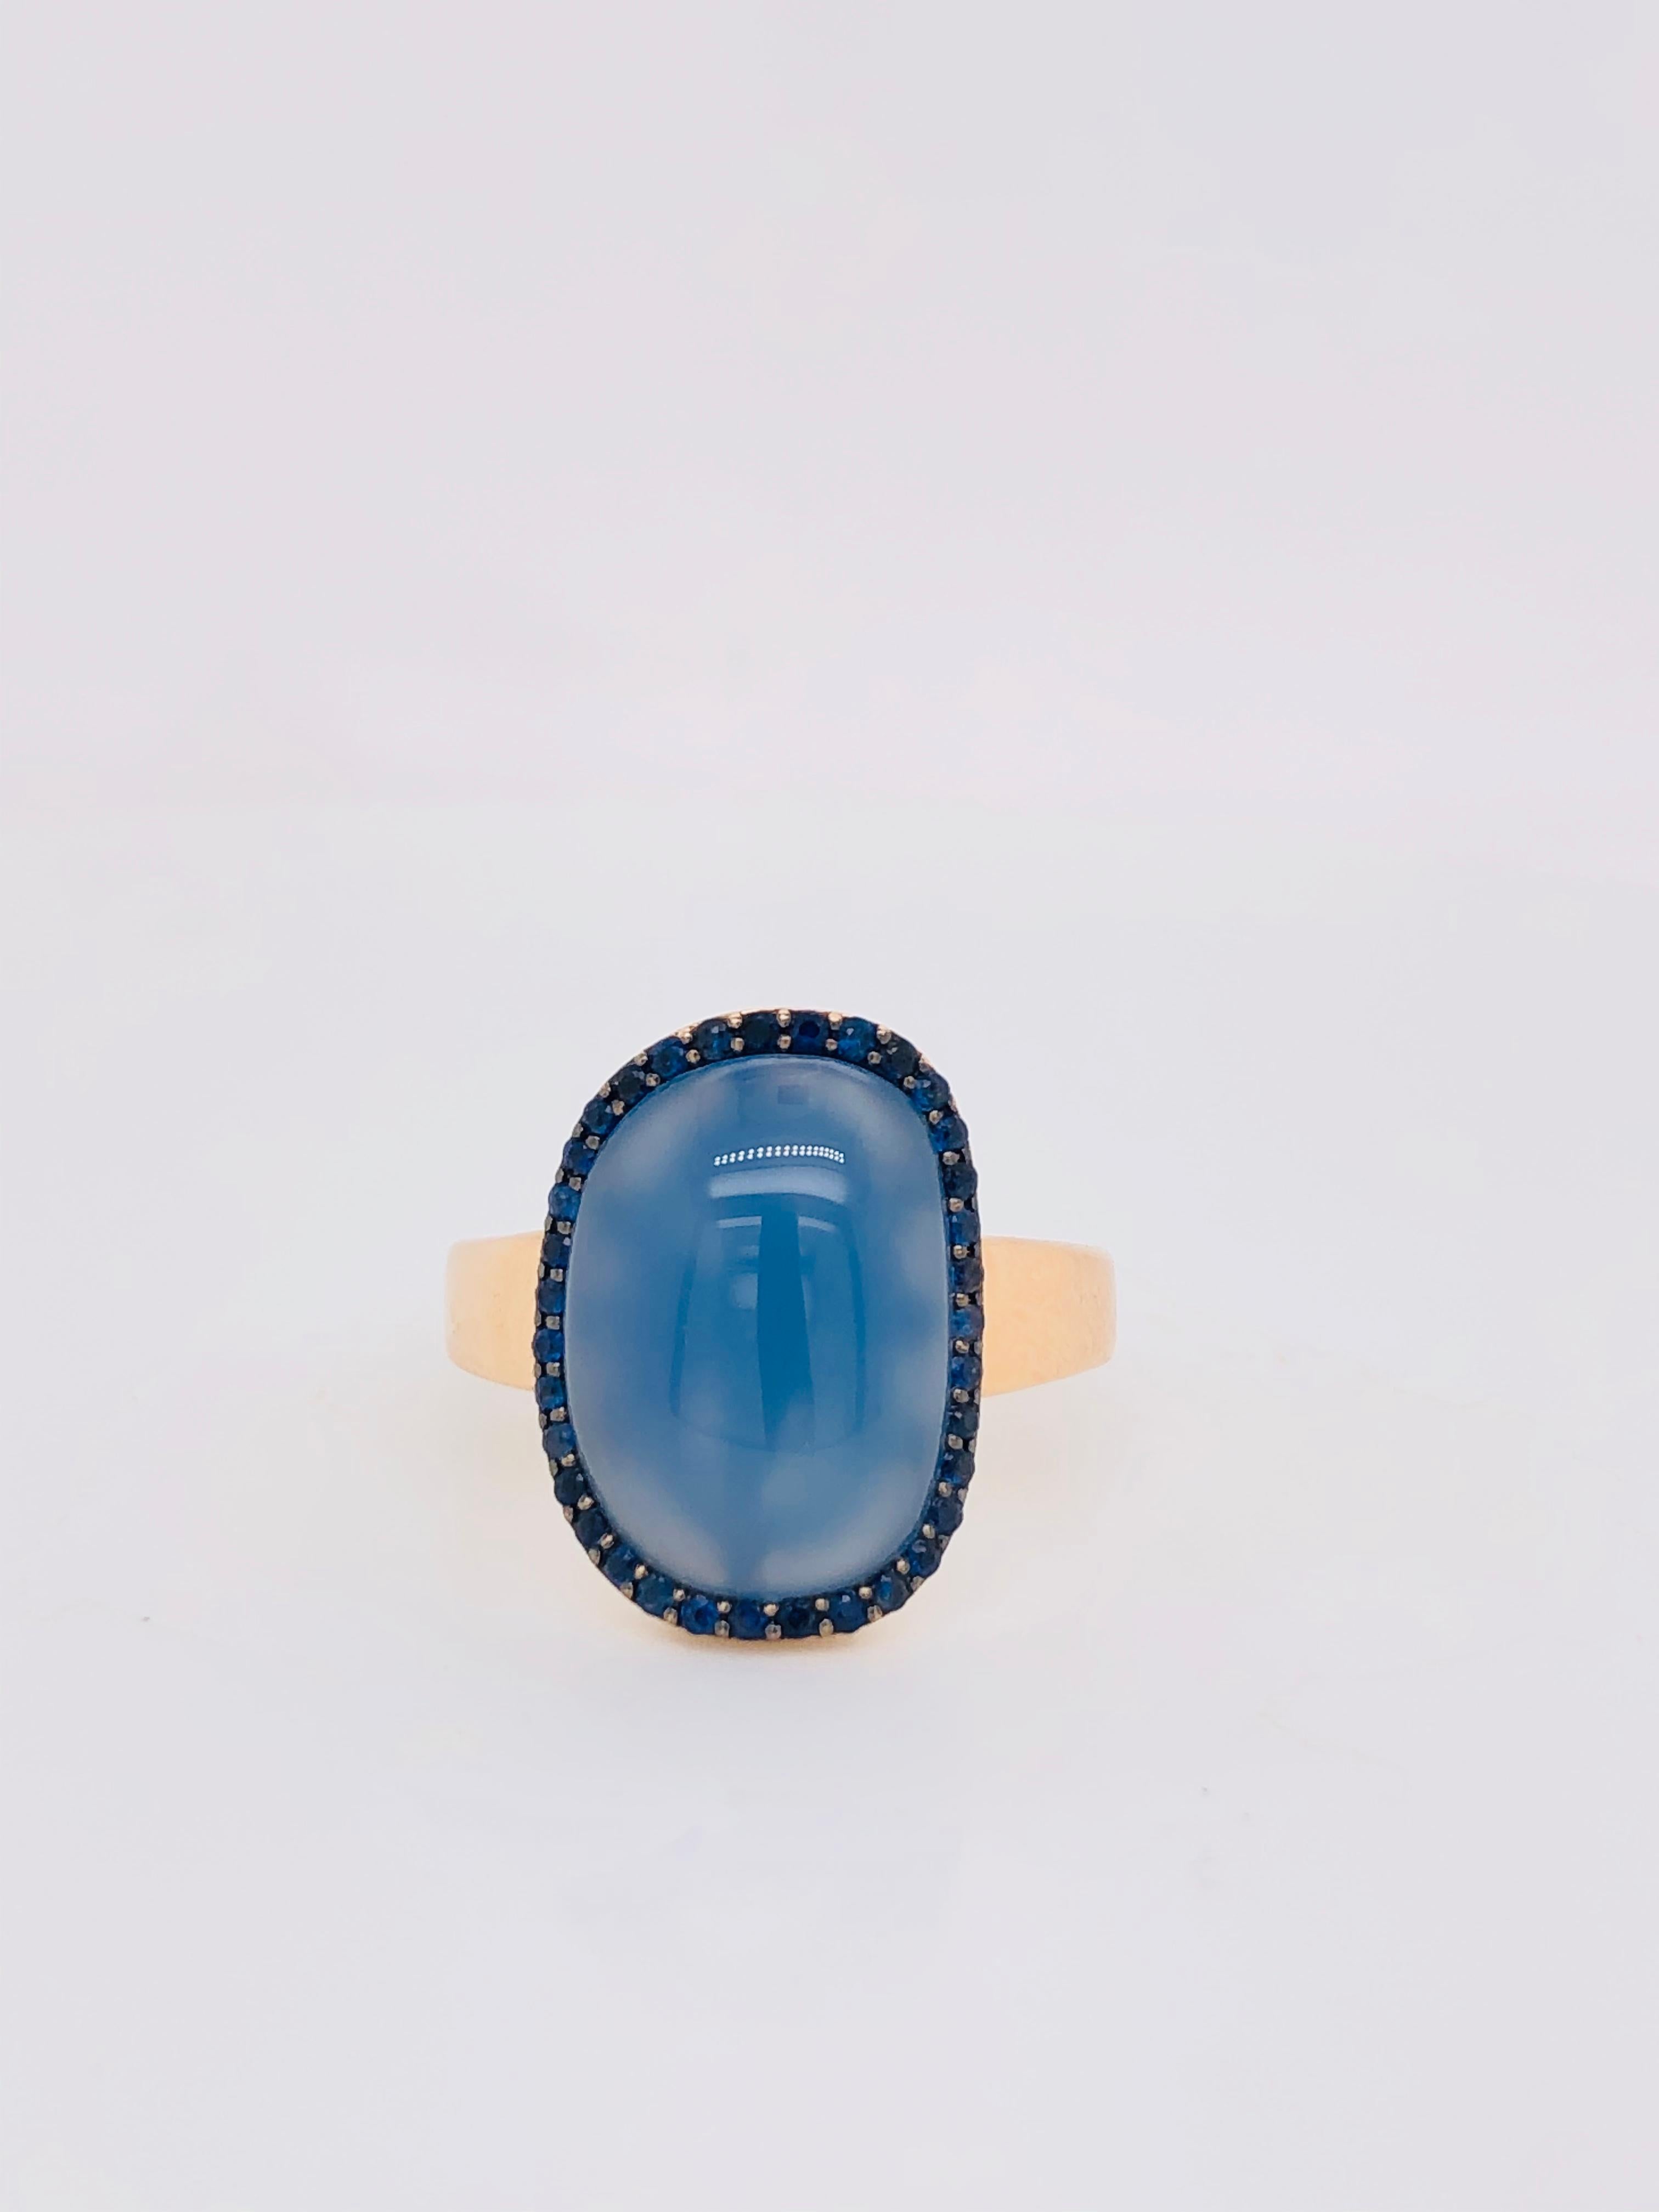 Entdecken Sie diesen prächtigen Ring aus 18 Karat Roségold, der sorgfältig gefertigt wurde, um Ihrer Schmucksammlung zeitlose Eleganz zu verleihen. Dieser exquisite Ring hat ein einzigartiges Design mit einem atemberaubenden Cabochon aus blauem